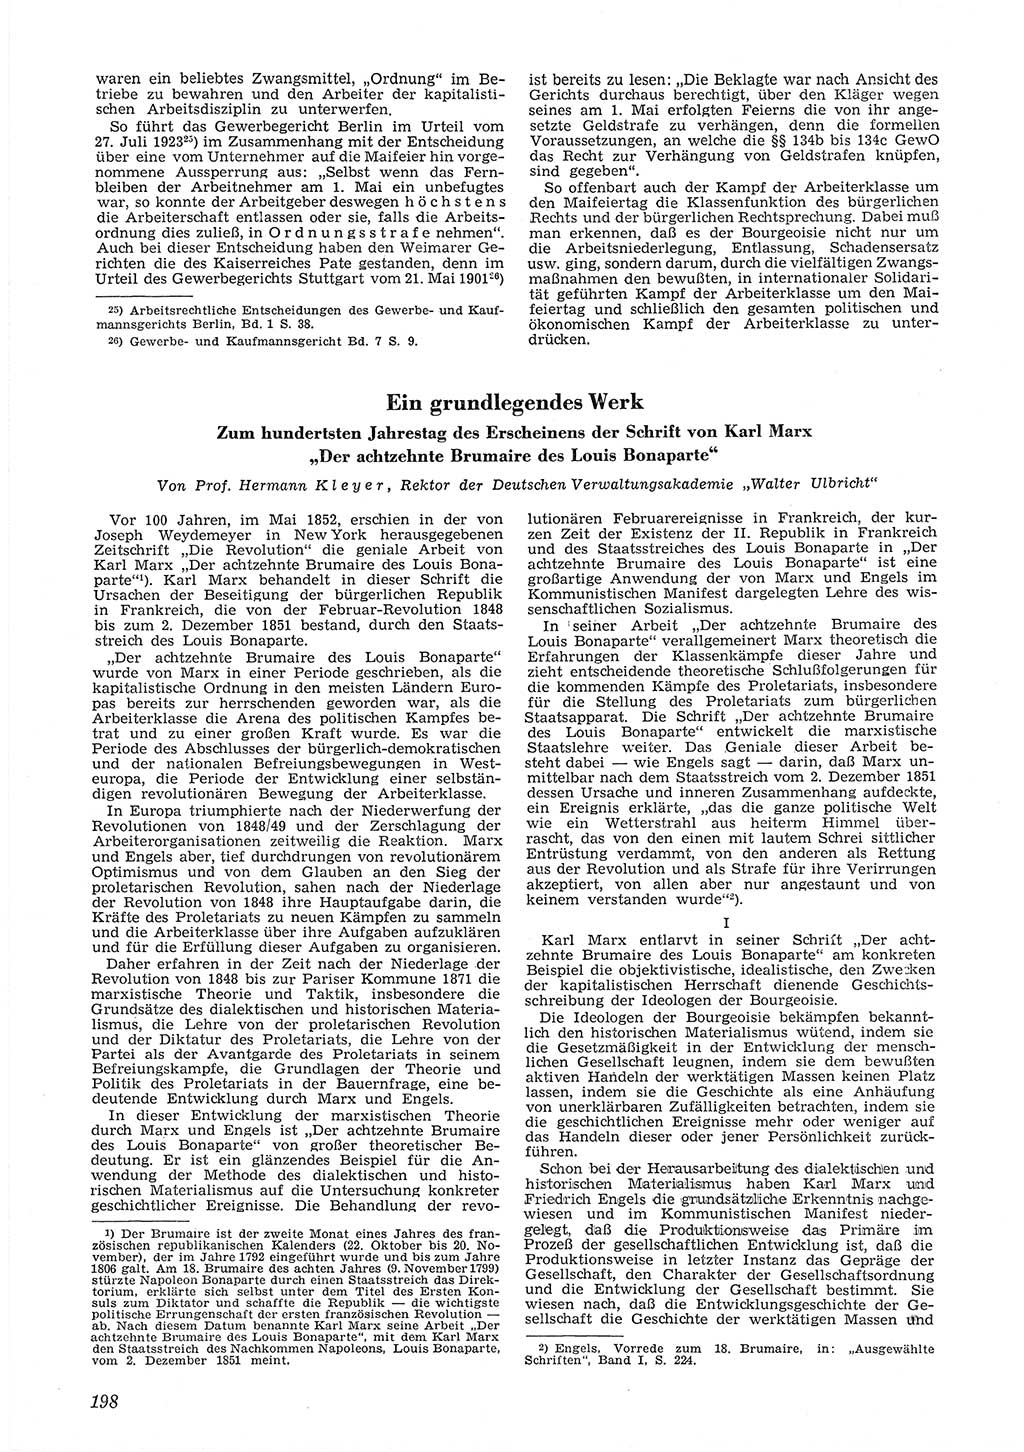 Neue Justiz (NJ), Zeitschrift für Recht und Rechtswissenschaft [Deutsche Demokratische Republik (DDR)], 6. Jahrgang 1952, Seite 198 (NJ DDR 1952, S. 198)